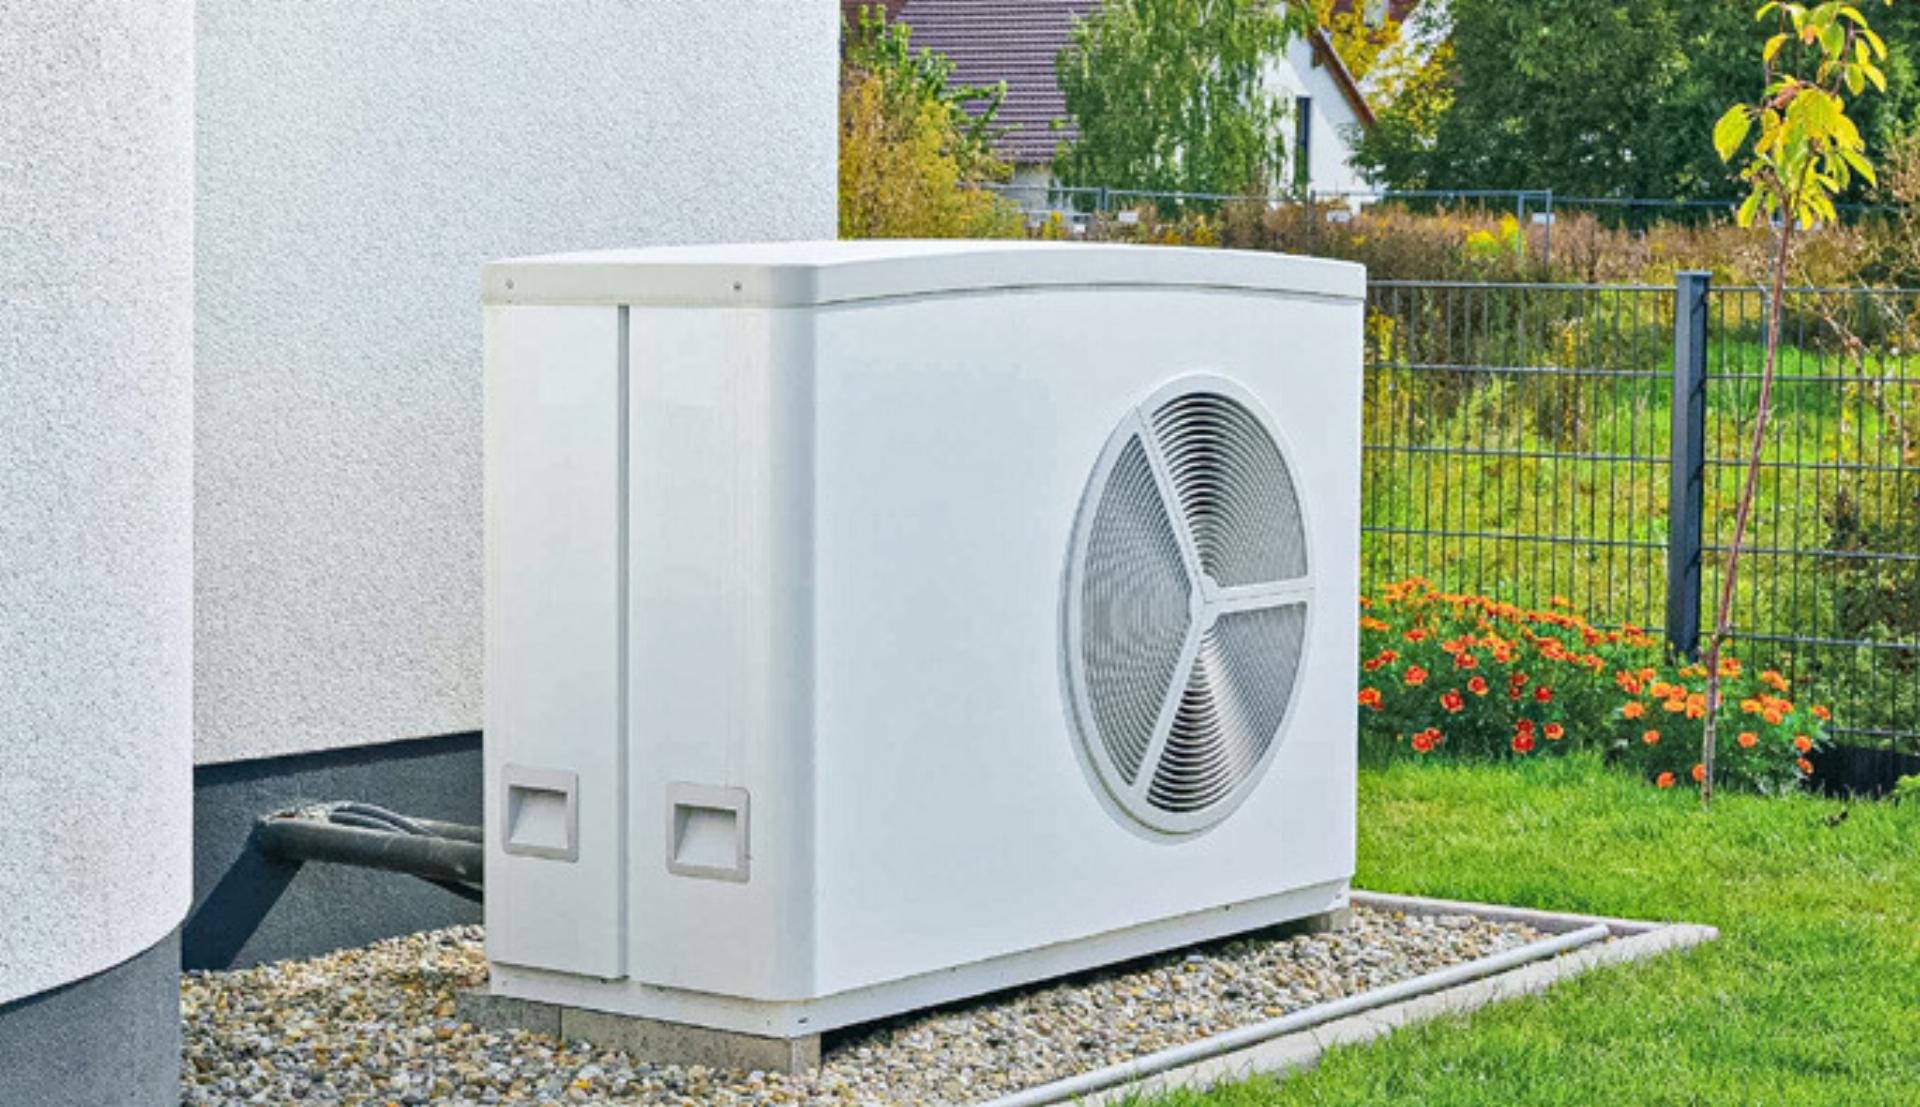 Bei Neubauten dürfen ab Oktober nur noch erneuerbare Heizsysteme, wie zum Beispiel Wärmepumpen, eingebaut werden. Bild zvg